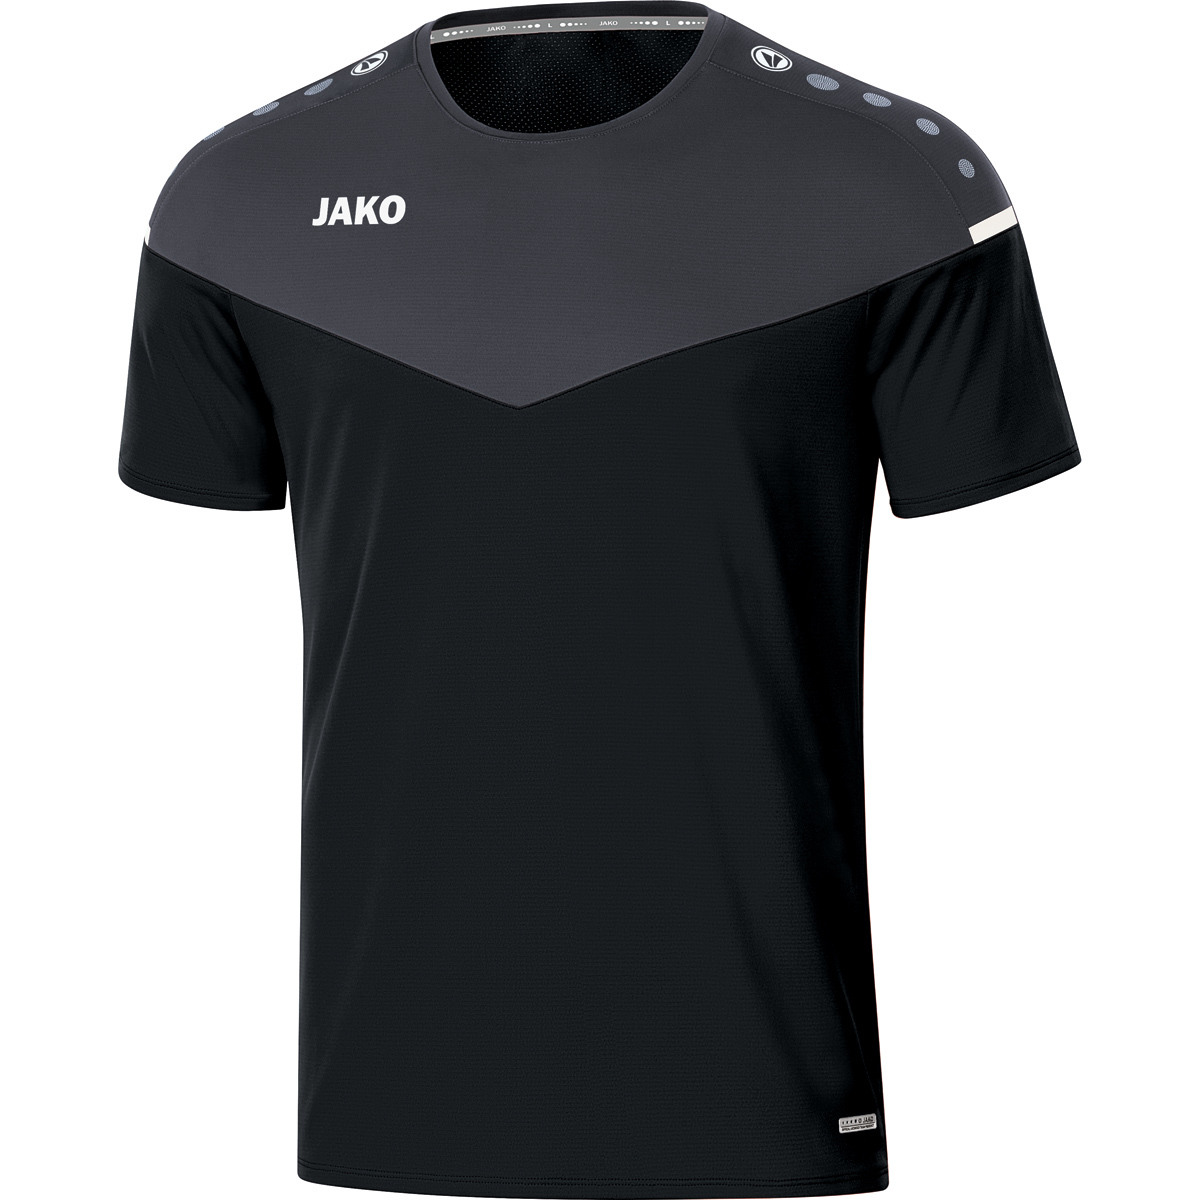 Herren, T-Shirt schwarz/anthrazit, Champ 3XL, 2.0 Gr. JAKO 6120